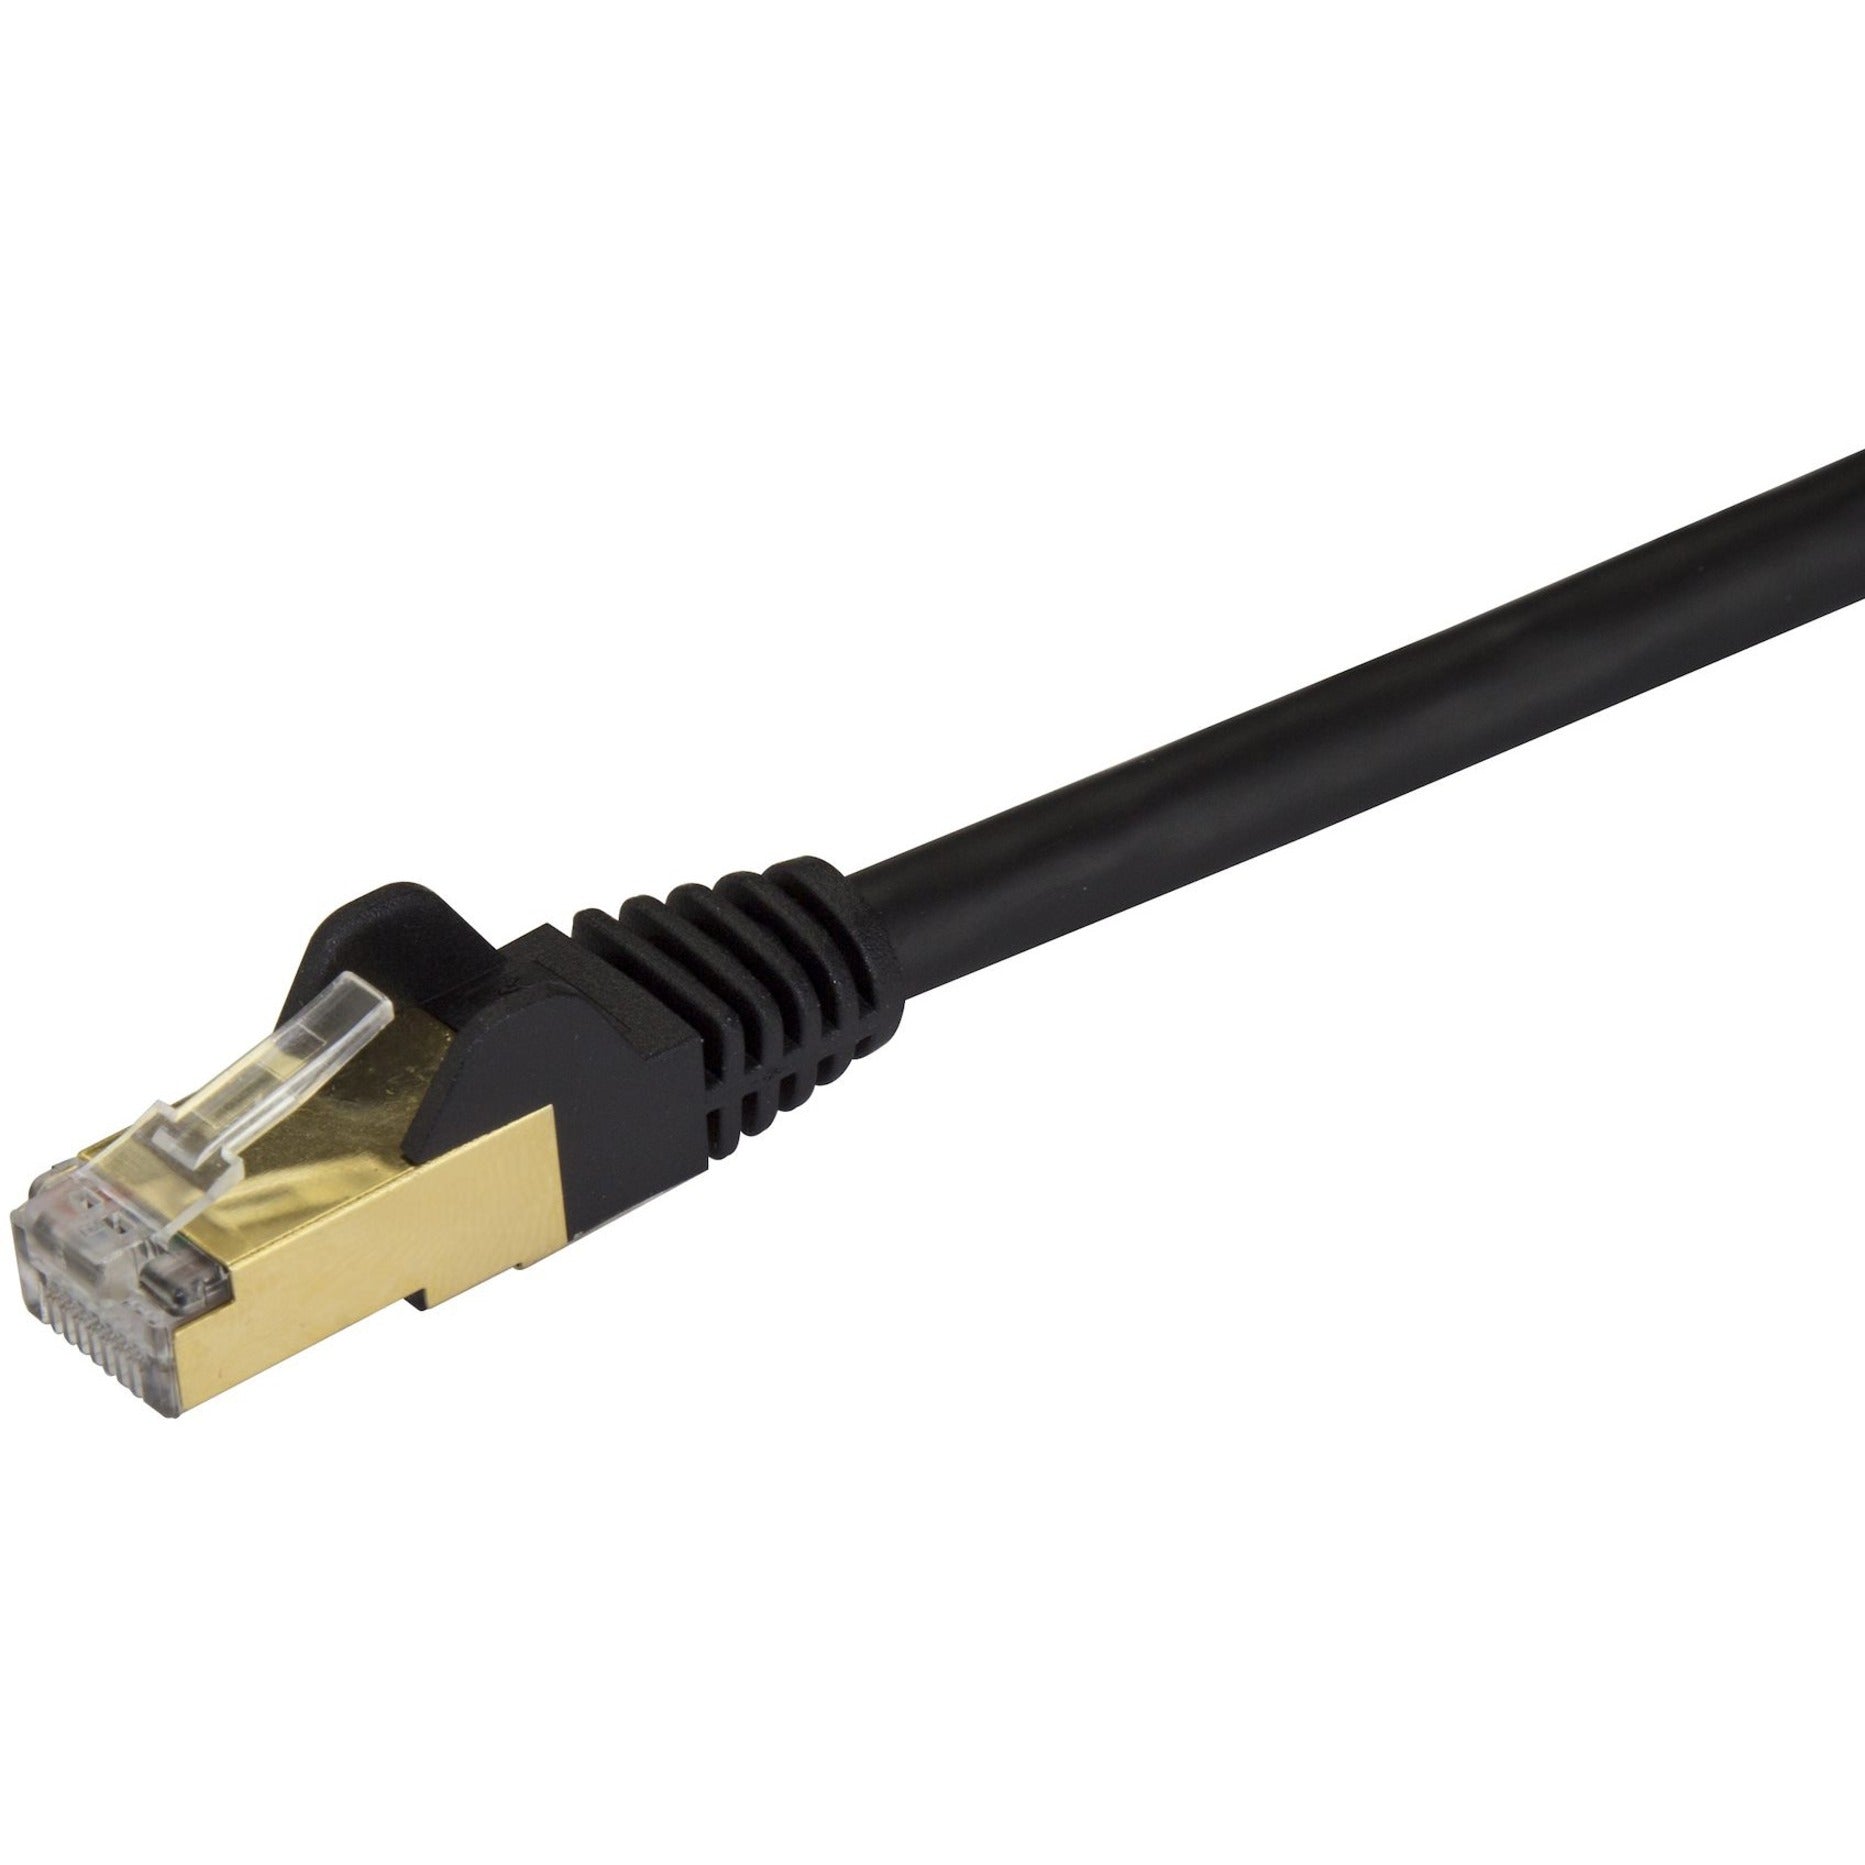 StarTech.com C6ASPAT30BK Cat6a Ethernet Patch Cable - Shielded (STP) - 30 ft., Black, Long Ethernet Cord